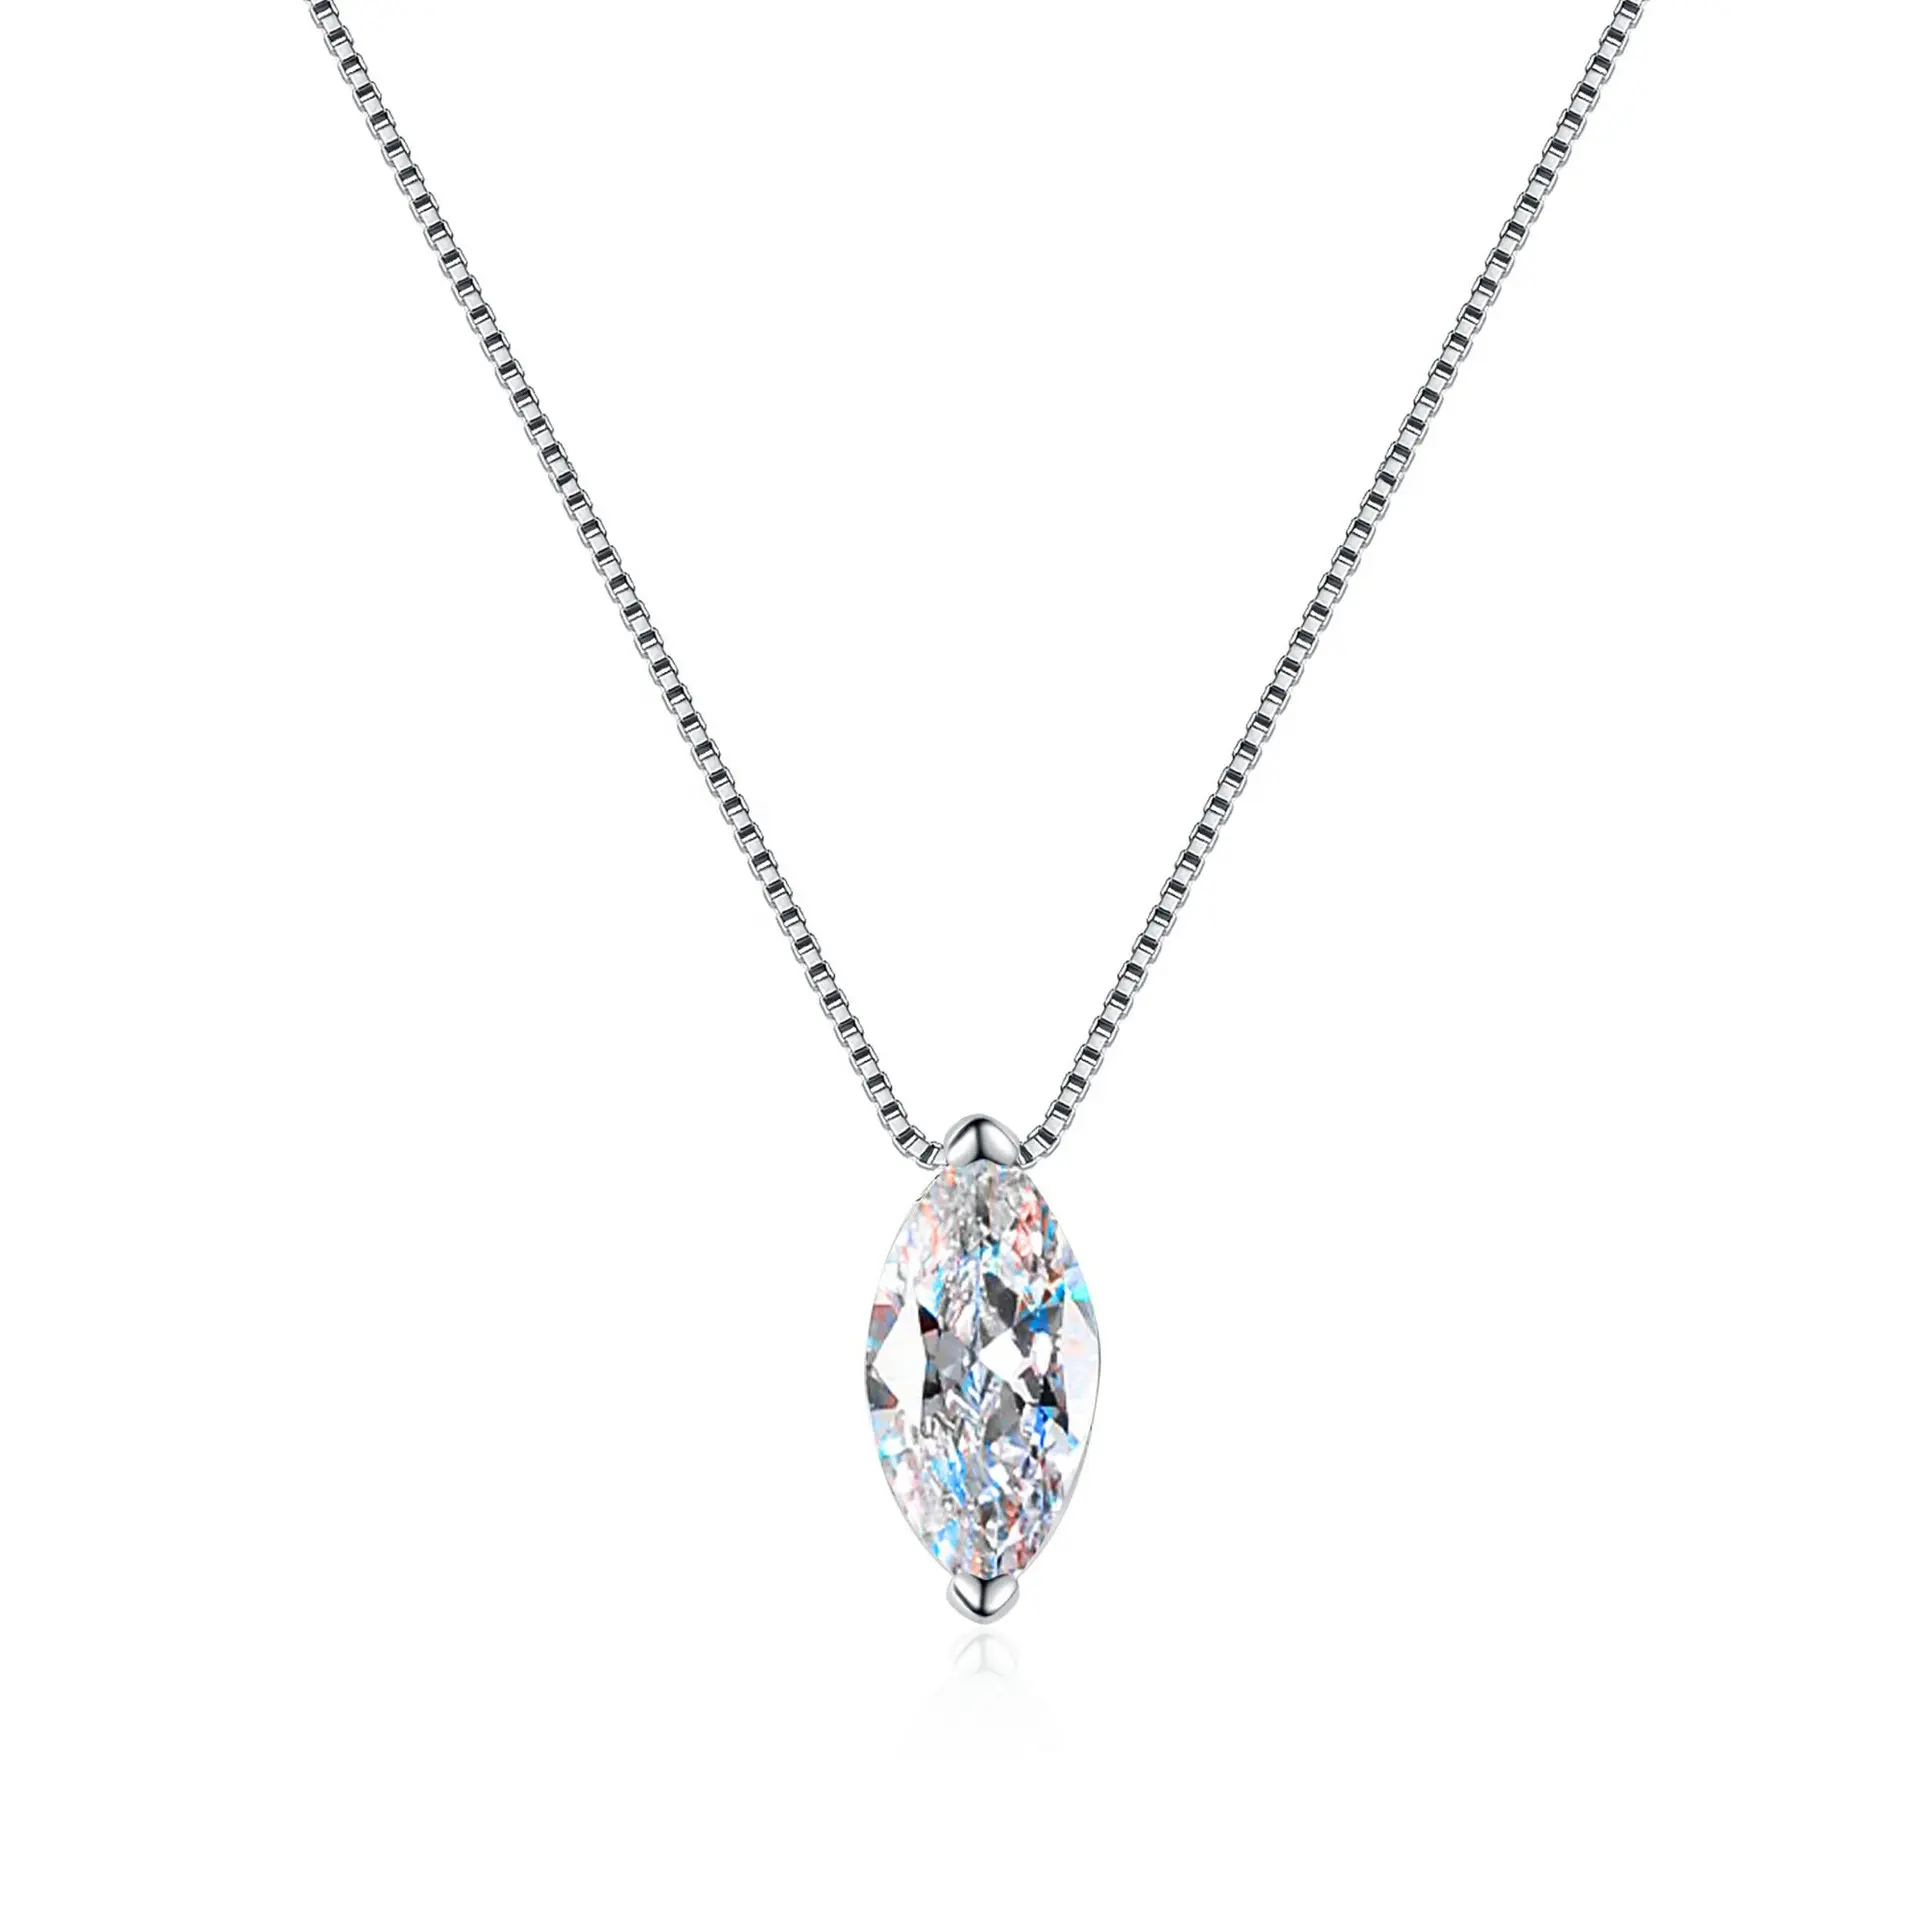 1 कैरेट पानी की बूंद प्राकृतिक हीरा हार 925 स्टर्लिंग चांदी की महिला मोइससानाइट पेलेंट और चेन नेकलेस